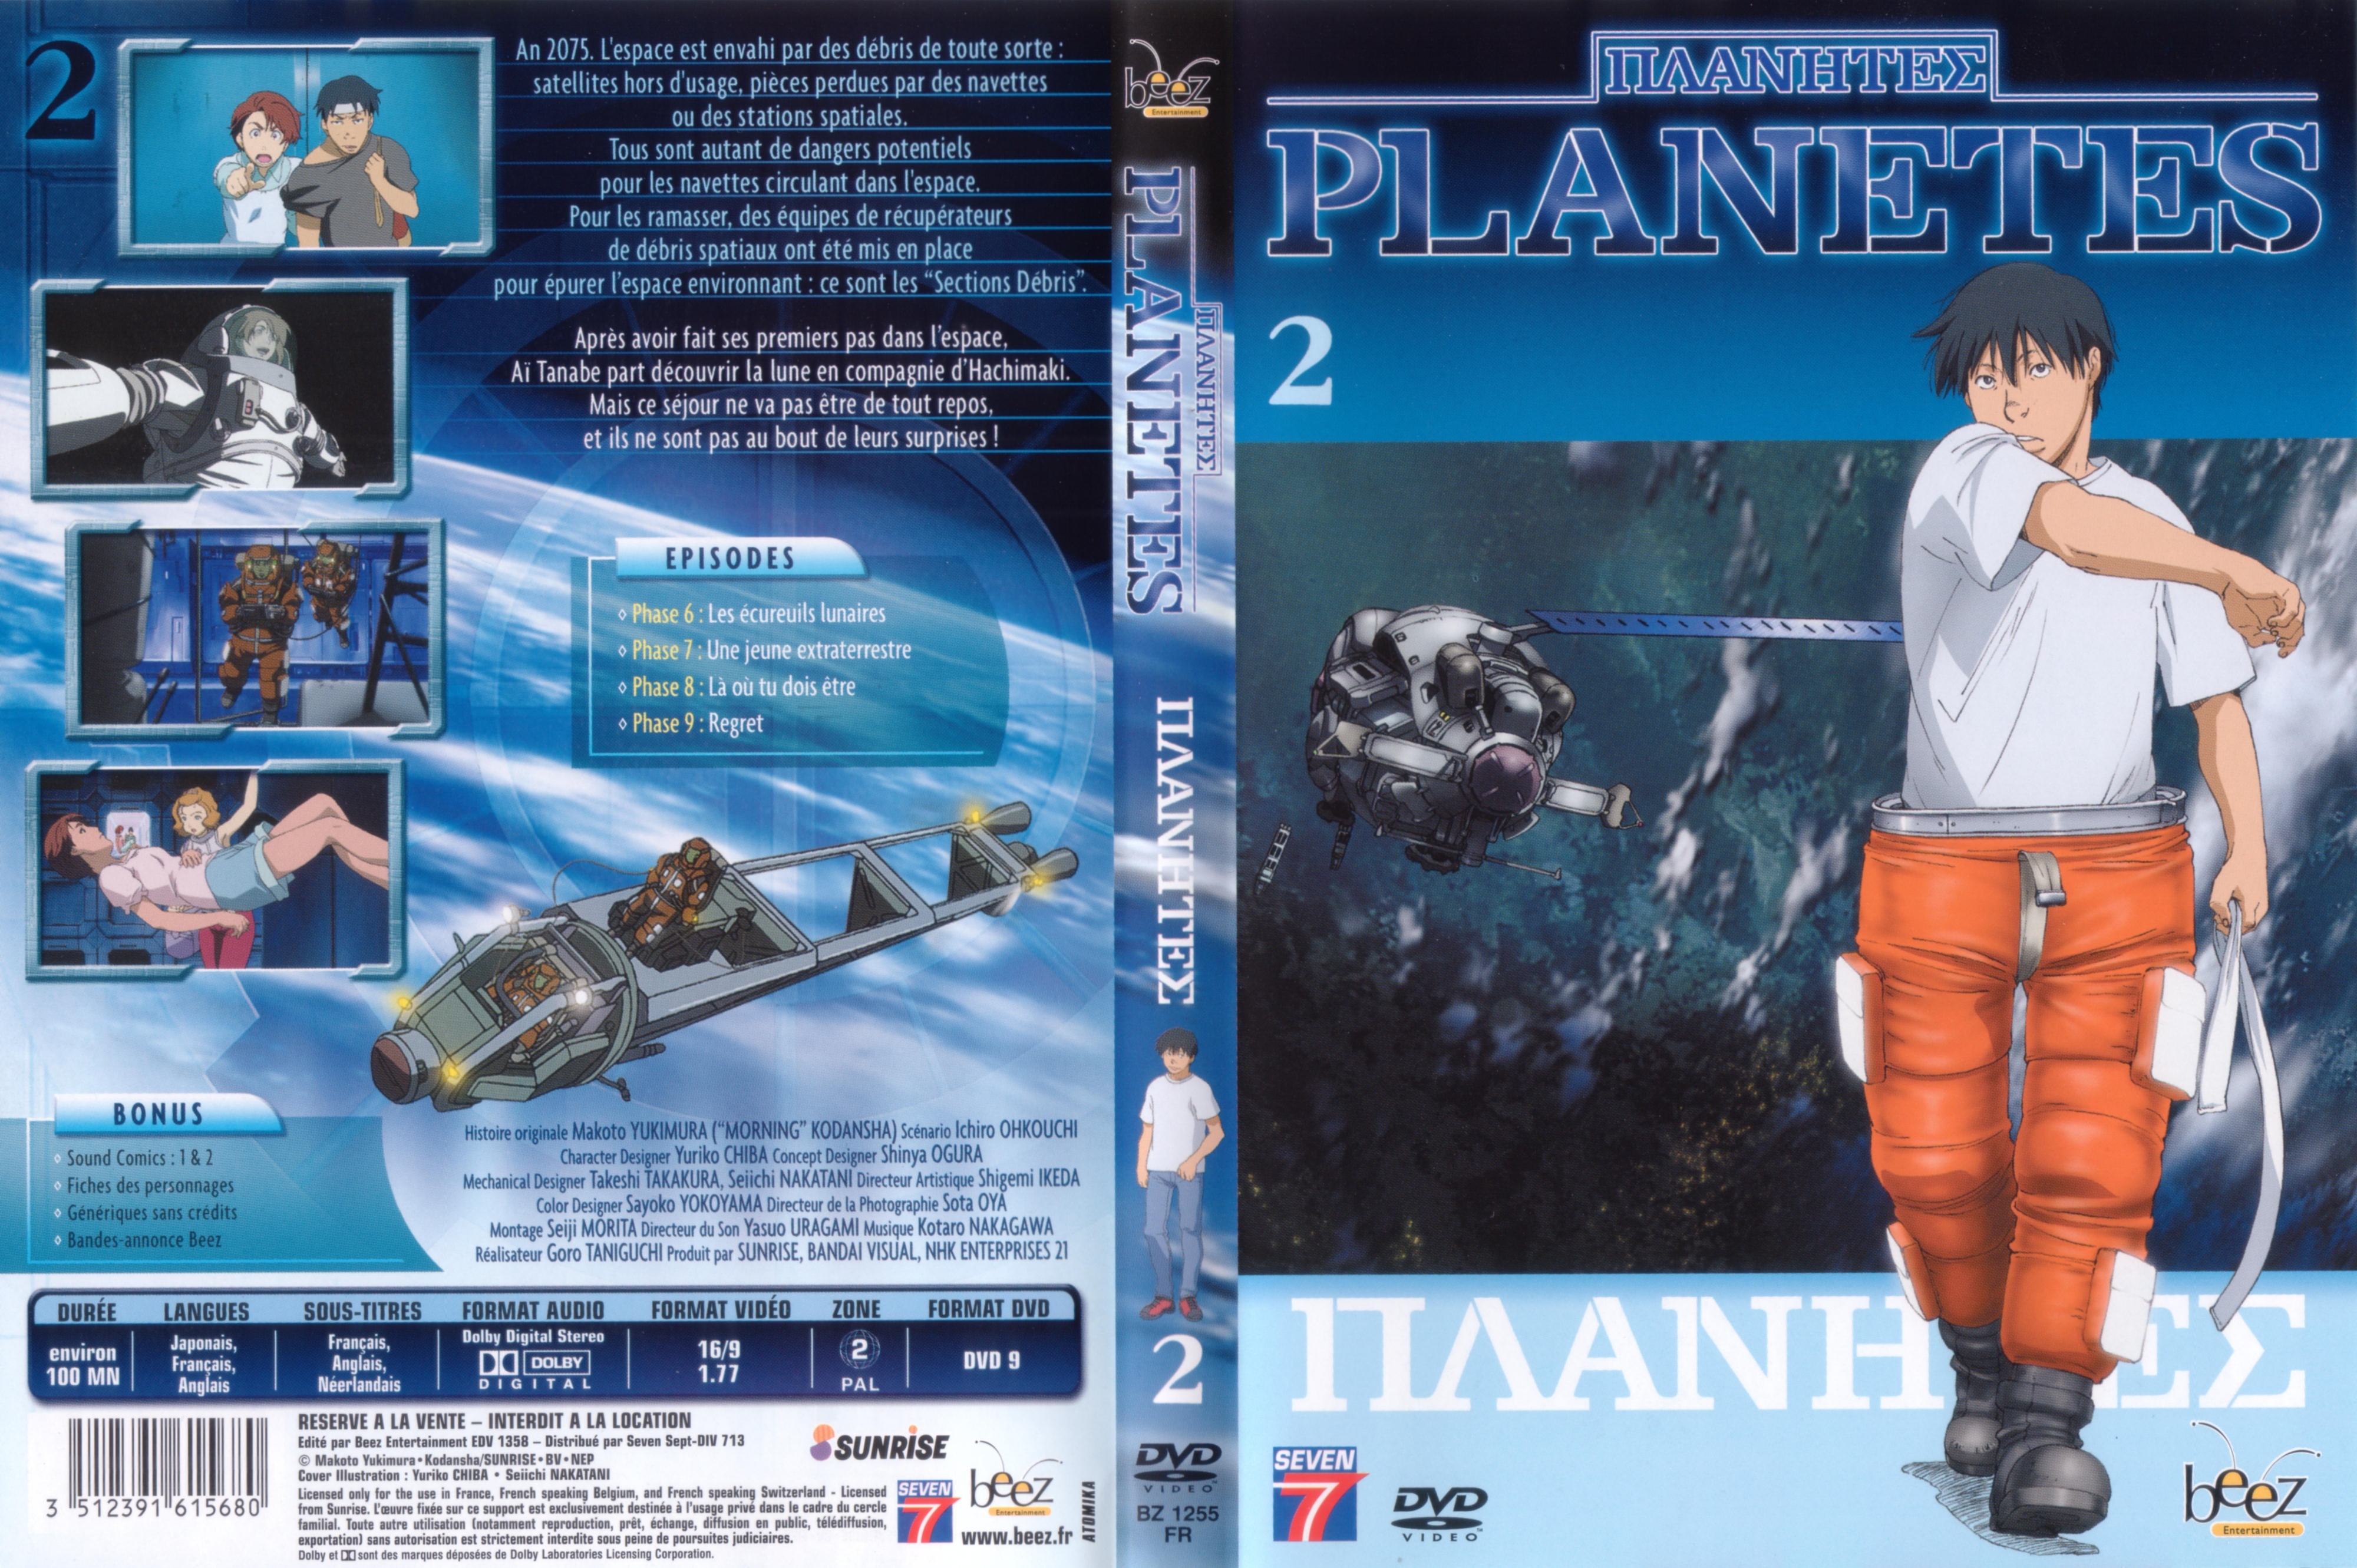 Jaquette DVD Planetes vol 2